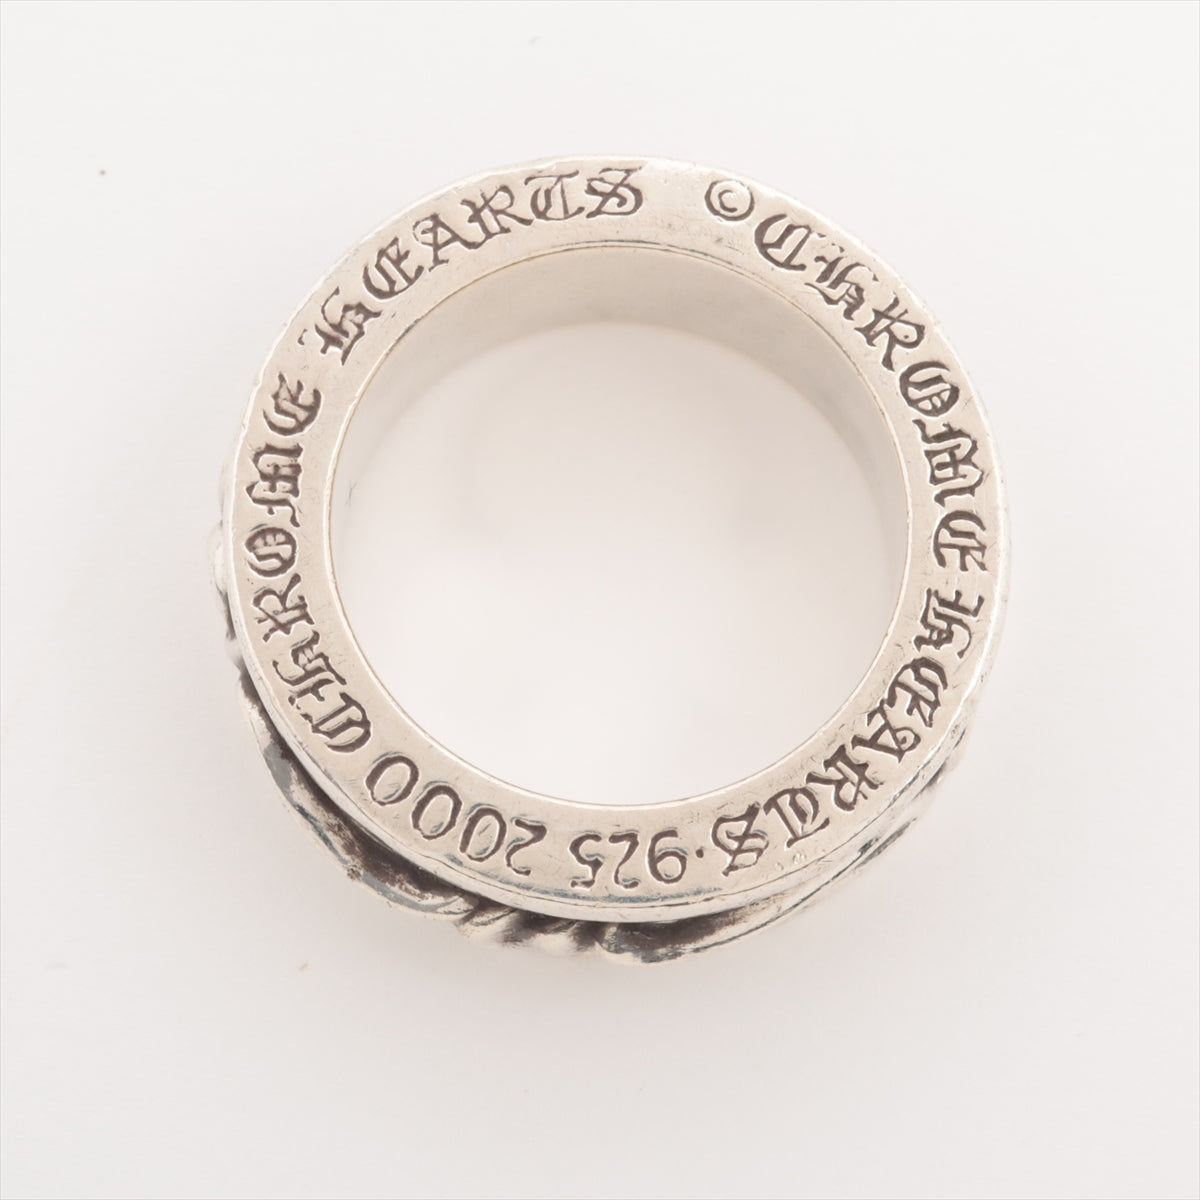 Chrome Hearts Spinner scroll rings 925 19.1g